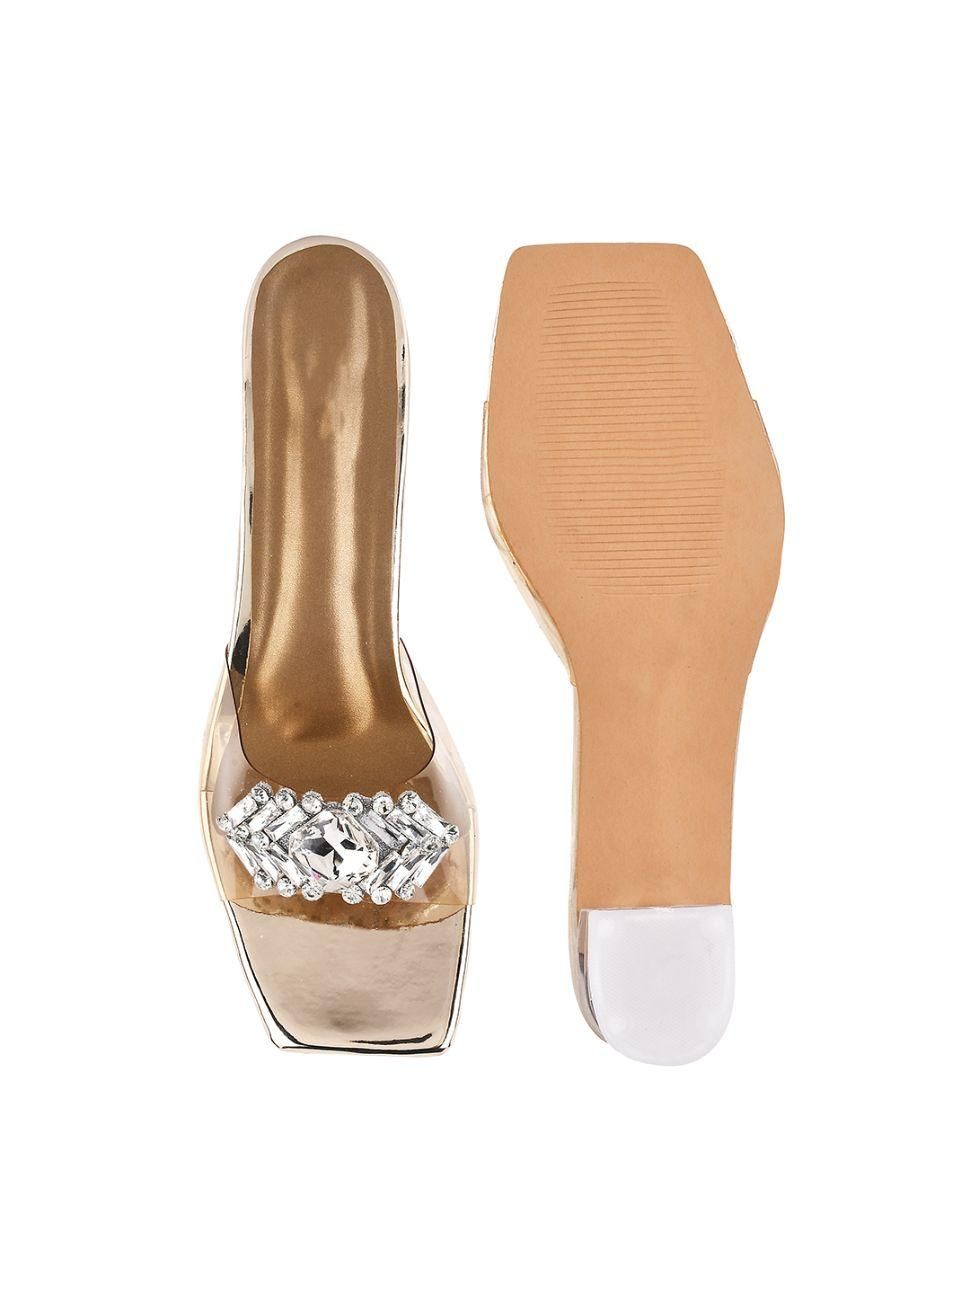 Stylish Trending Block Heel Sandal For Women's